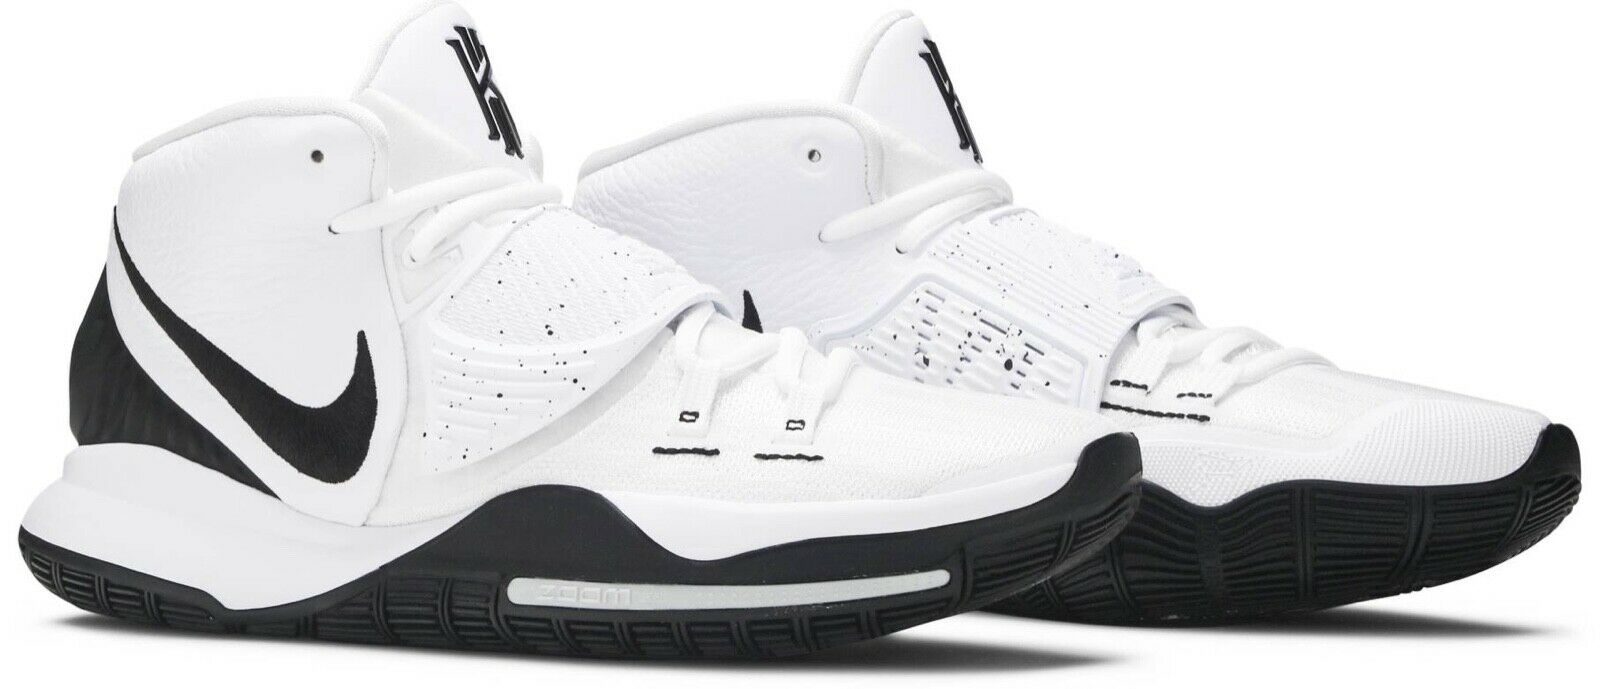 Nike (Kyrie 6) White Black Oreo Shoes (BQ4630-100) Mens Size 11 New NIB Fast⭐️